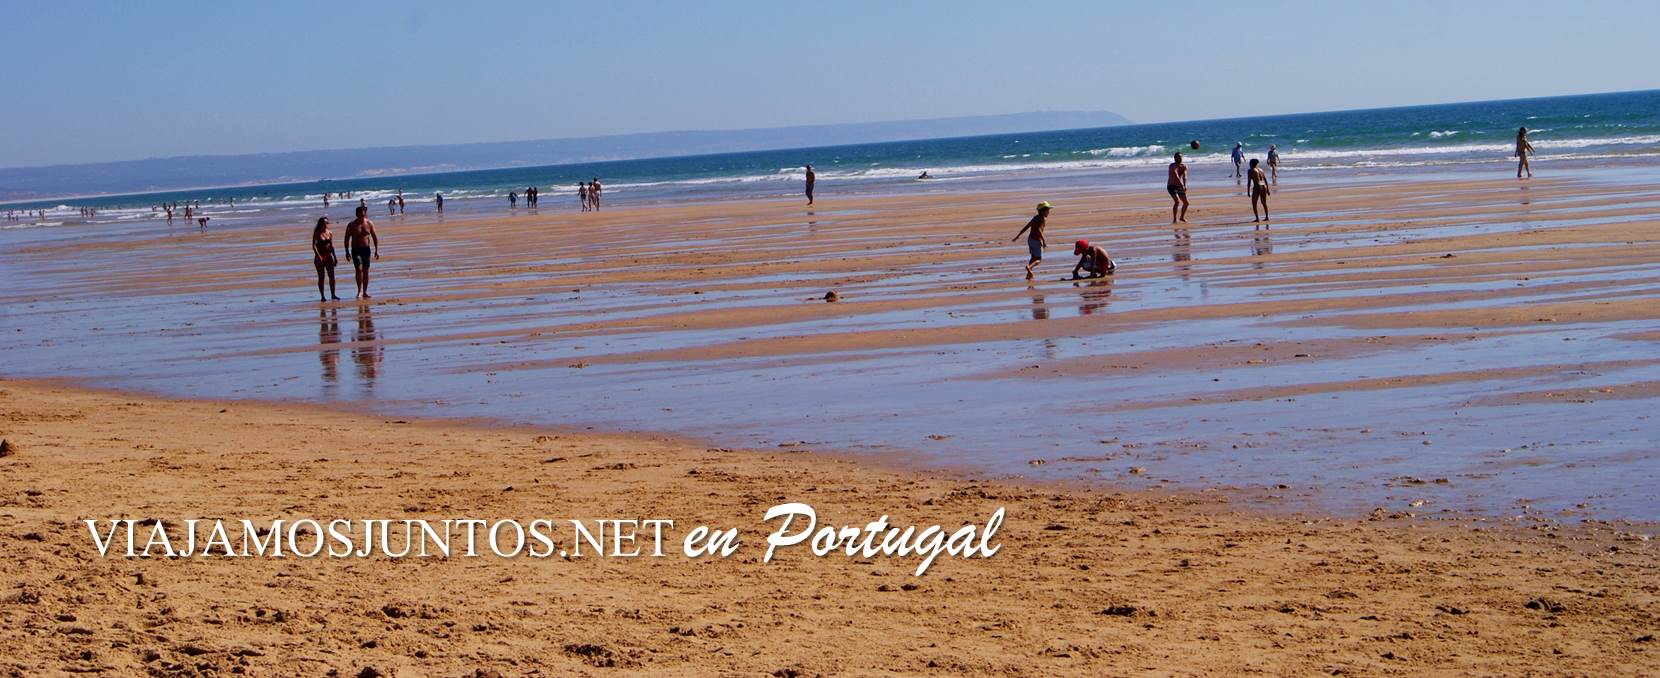 Las playas de Caparica Mejores playas de la Península Ibérica